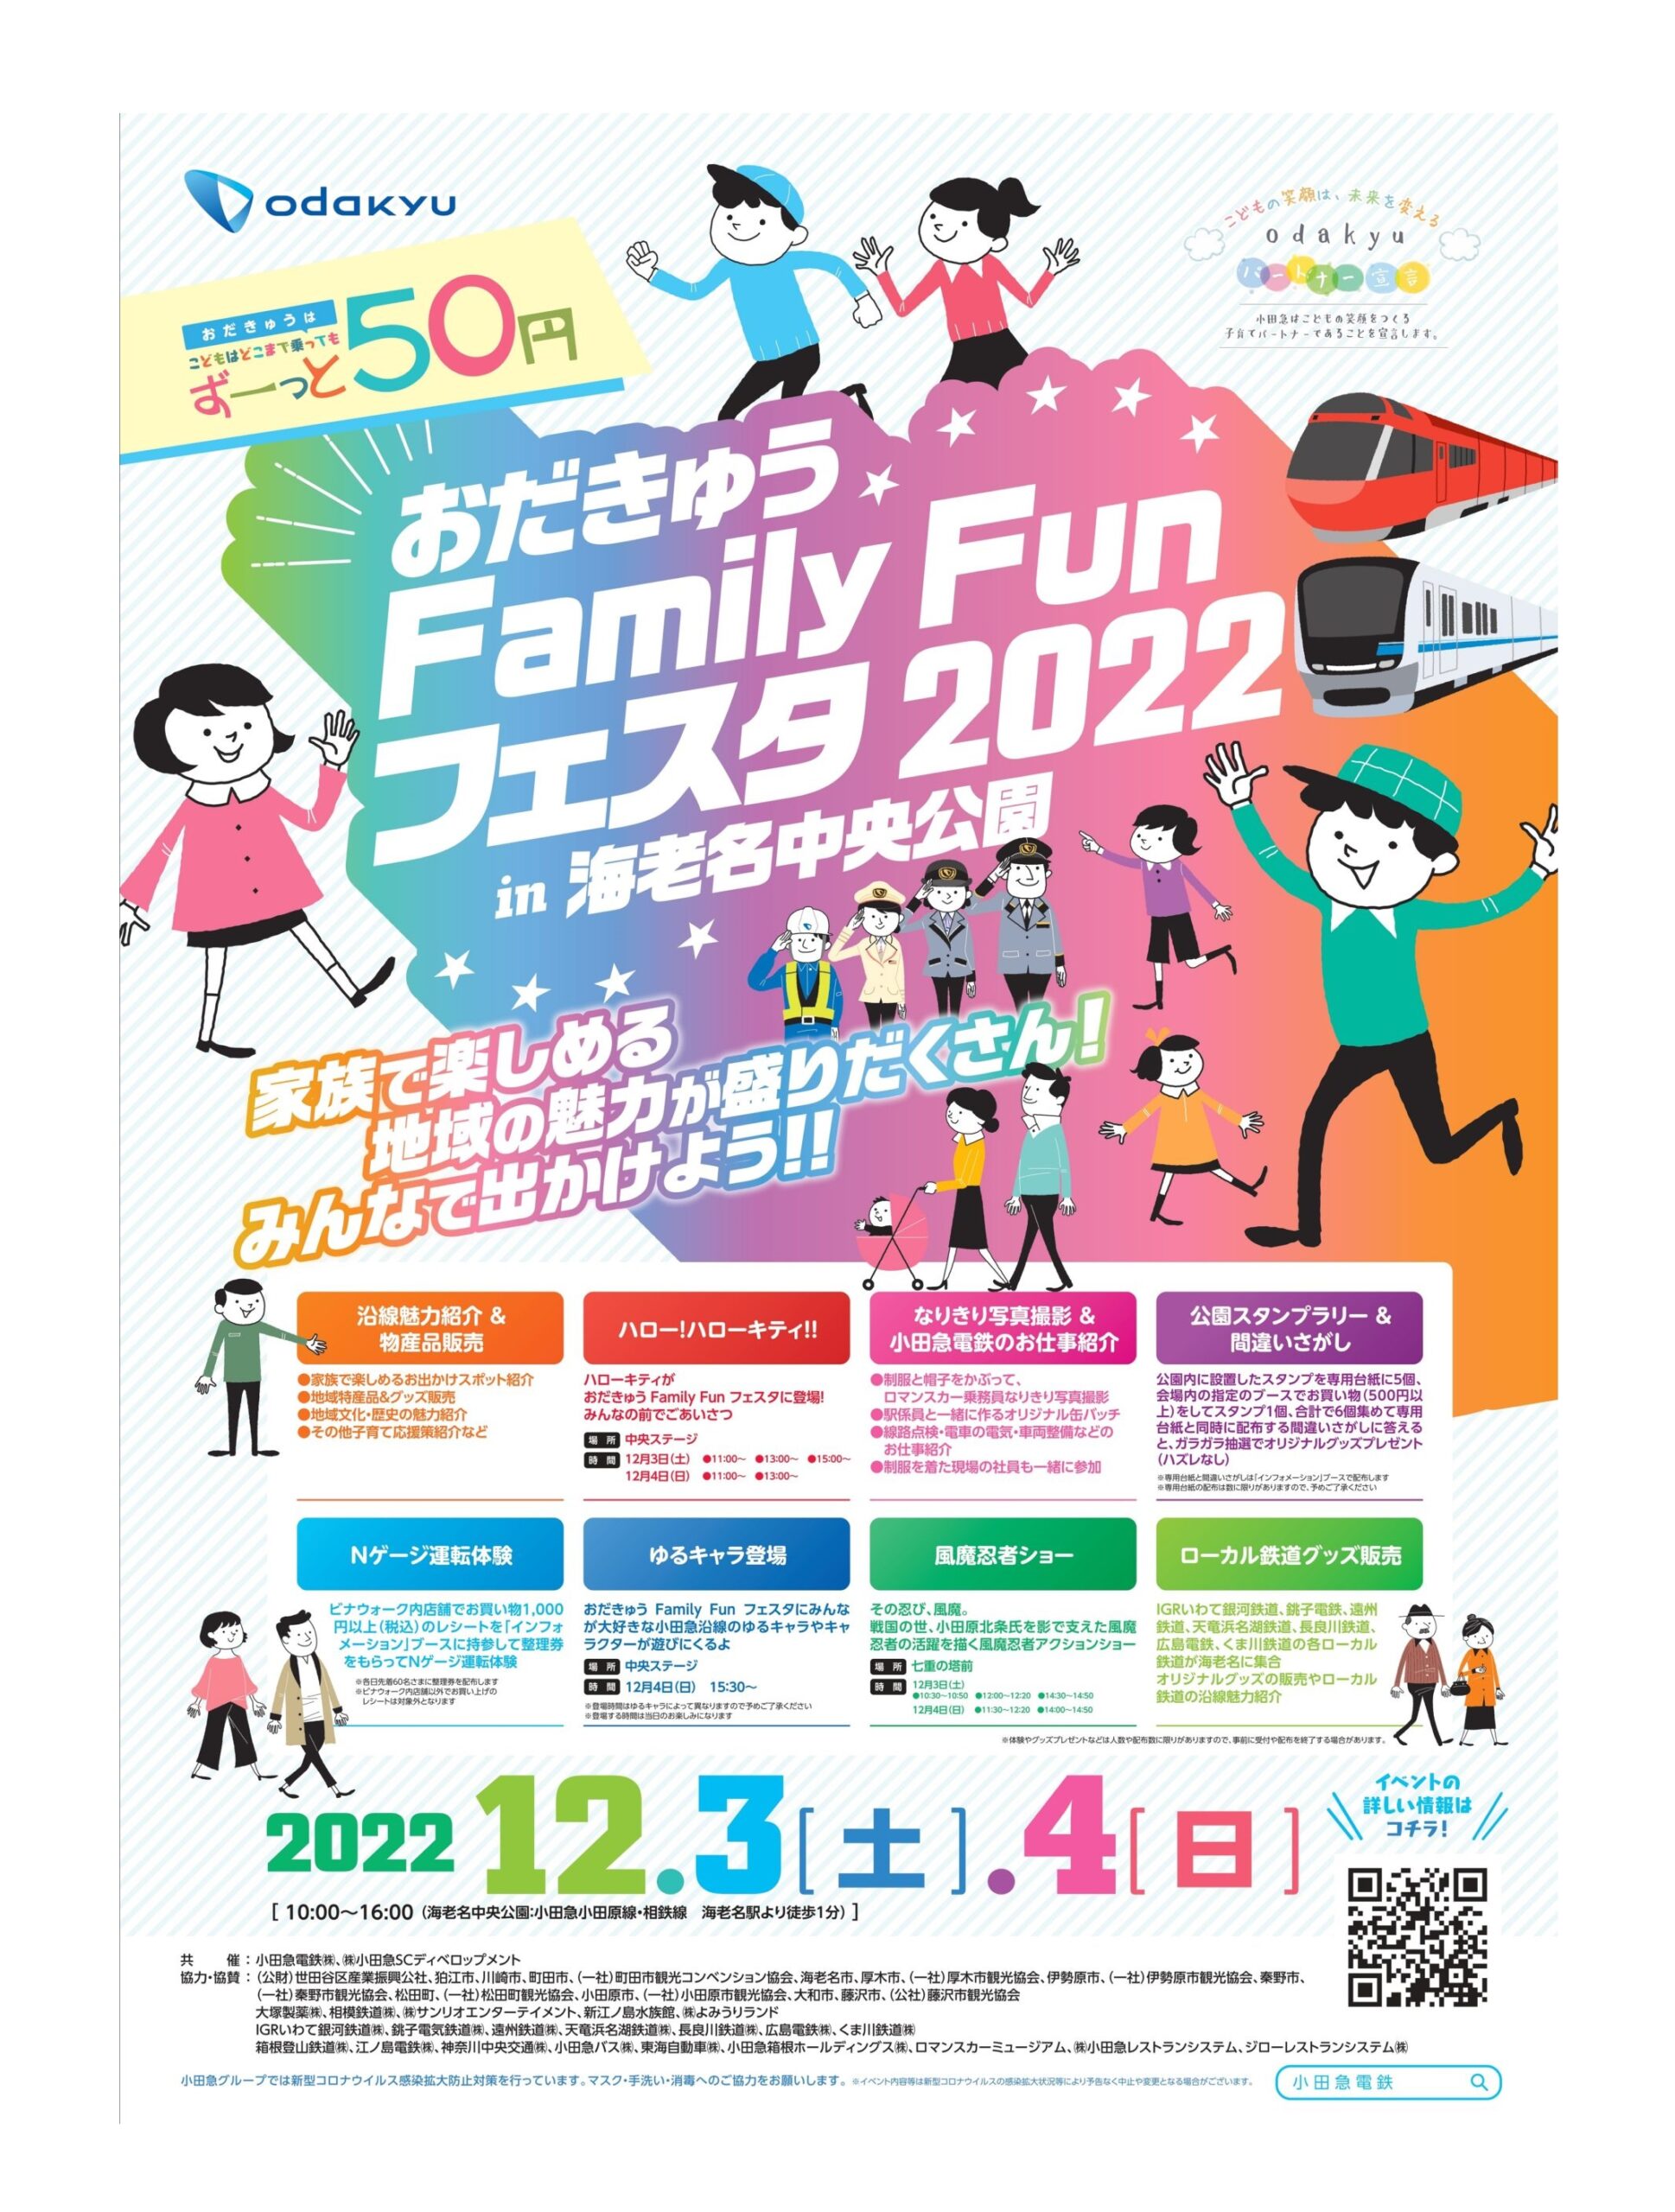 12月3、4日「おだきゅう Family Fun フェスタ2022in海老名中央公園